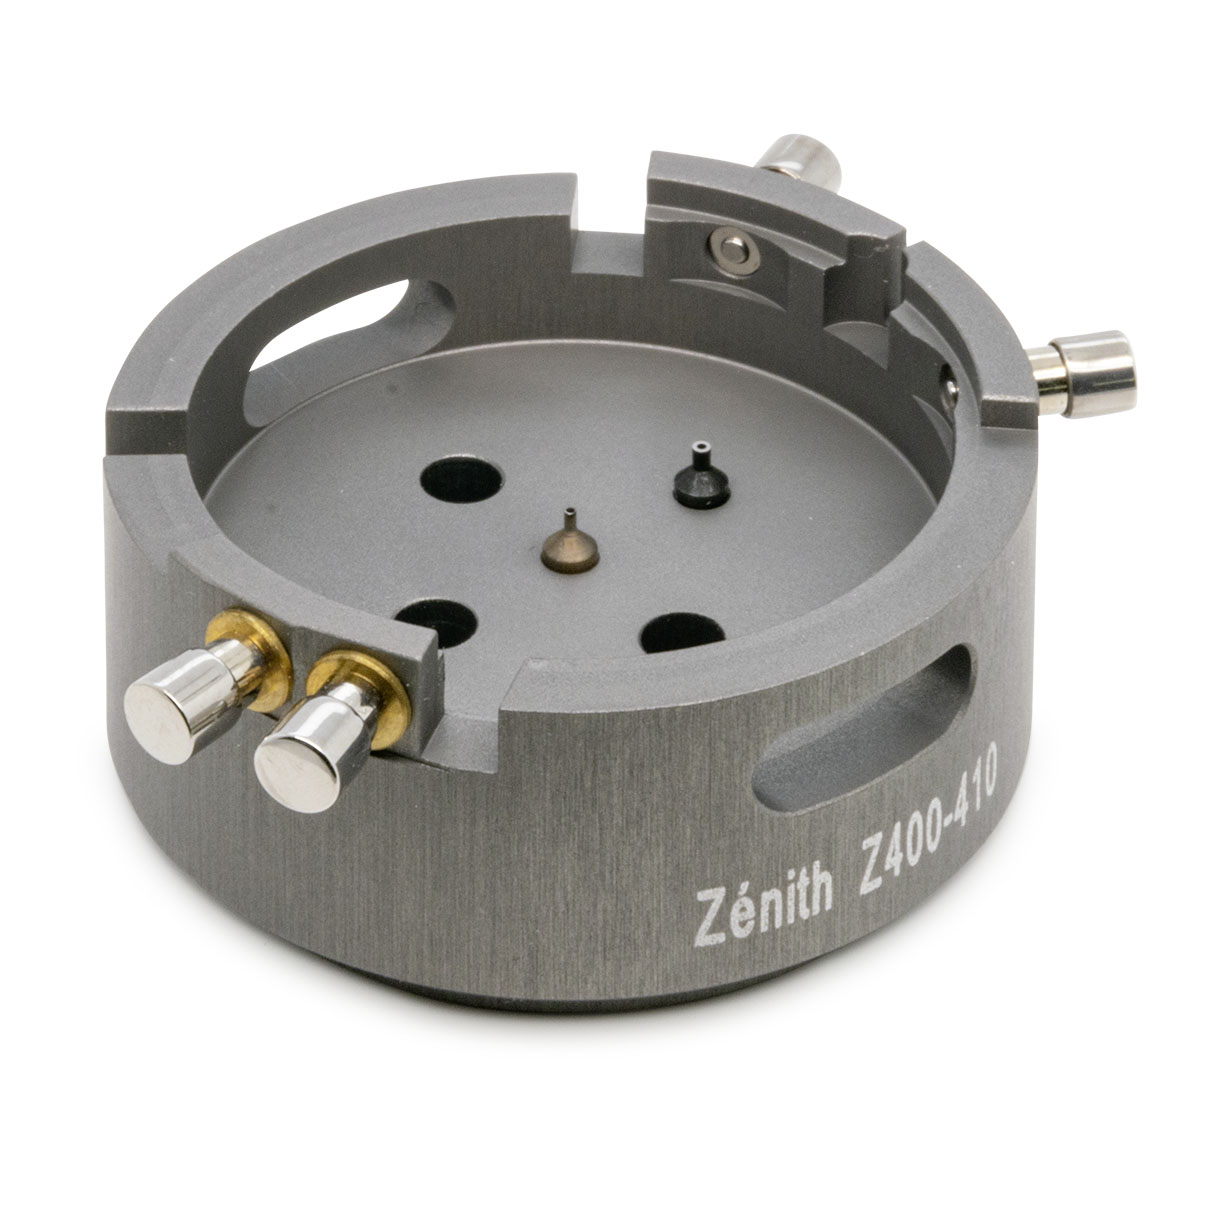 Porte-pièce pour poser les aiguilles pour calibre Zénith Z400-410